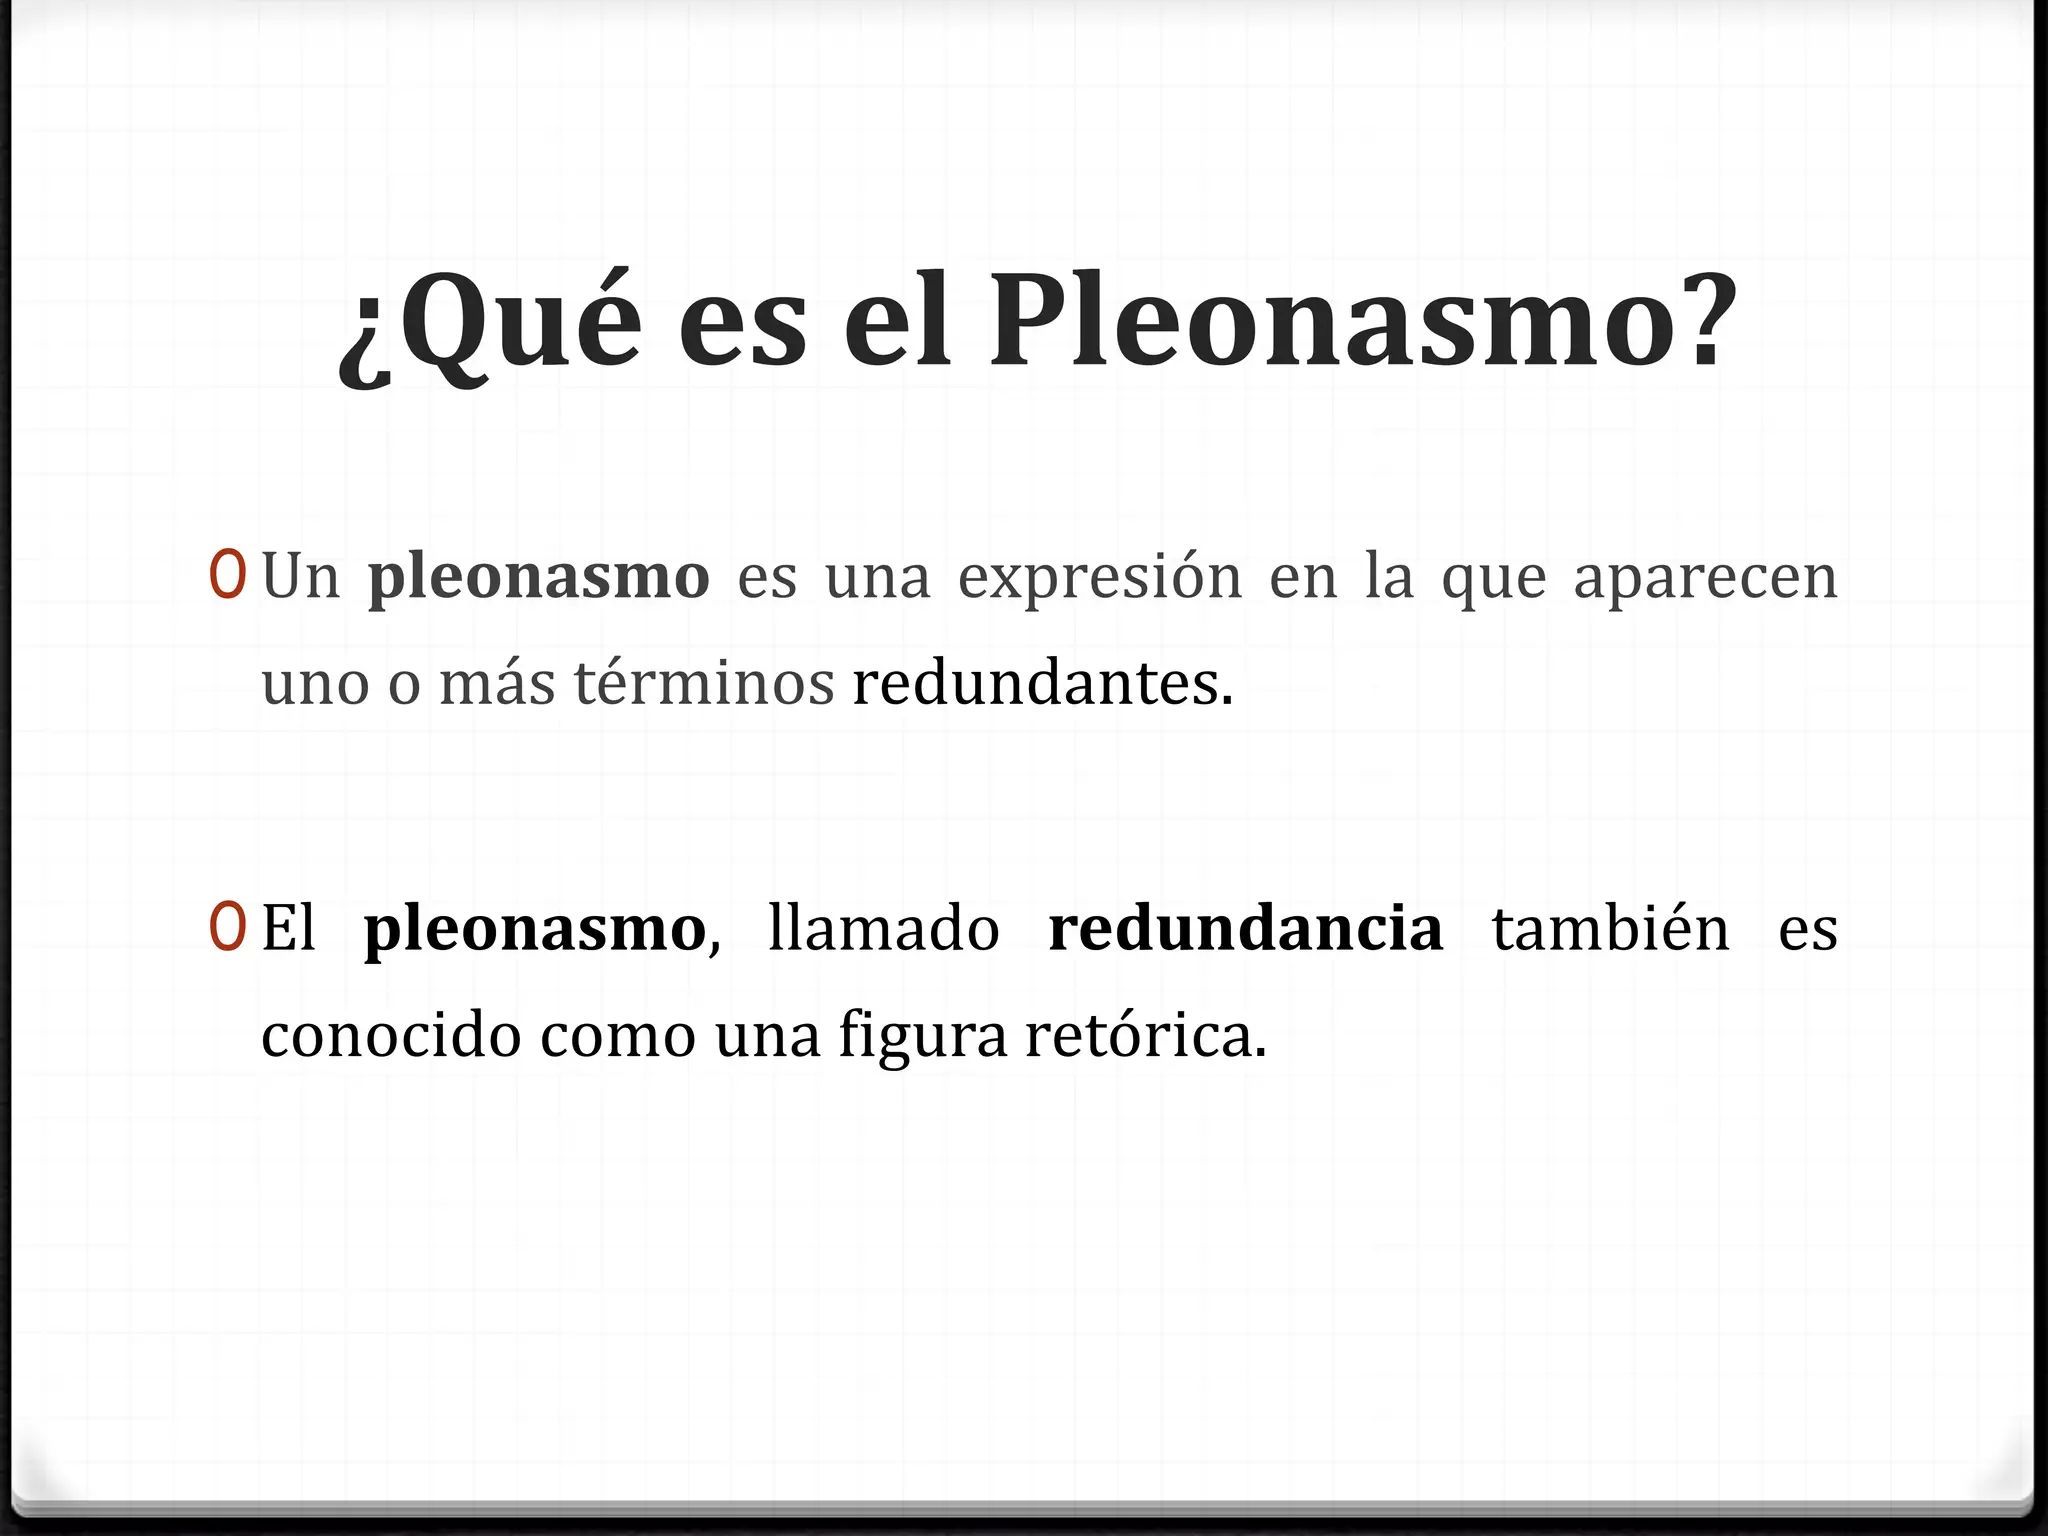 el-pleonasmo-2-2-2048.jpg